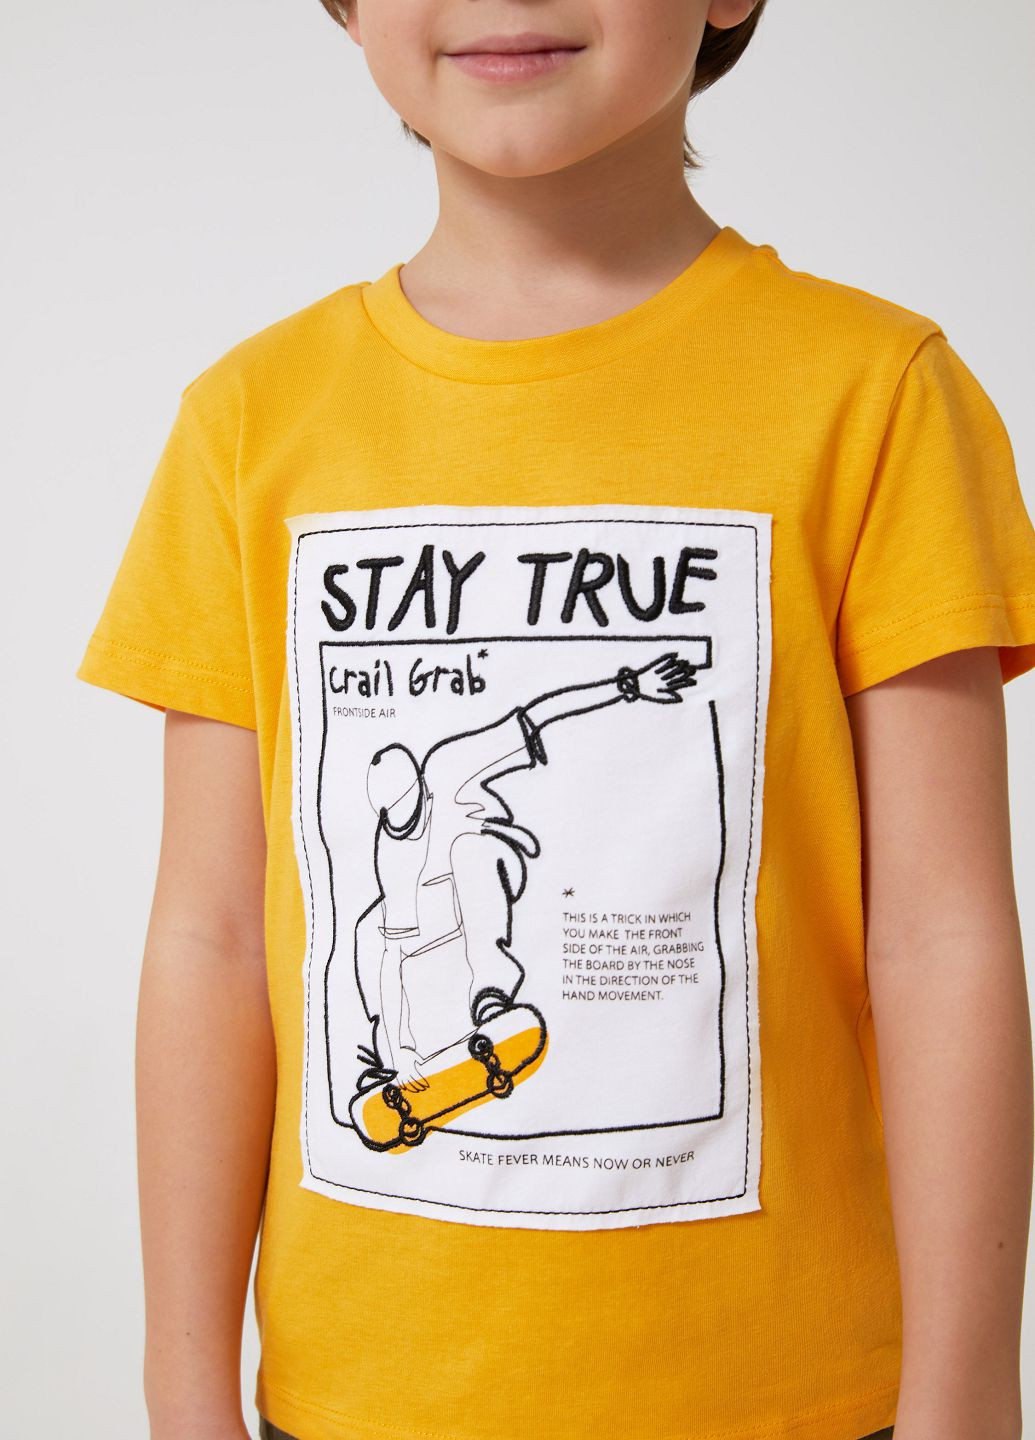 Жовта літня футболка SELA